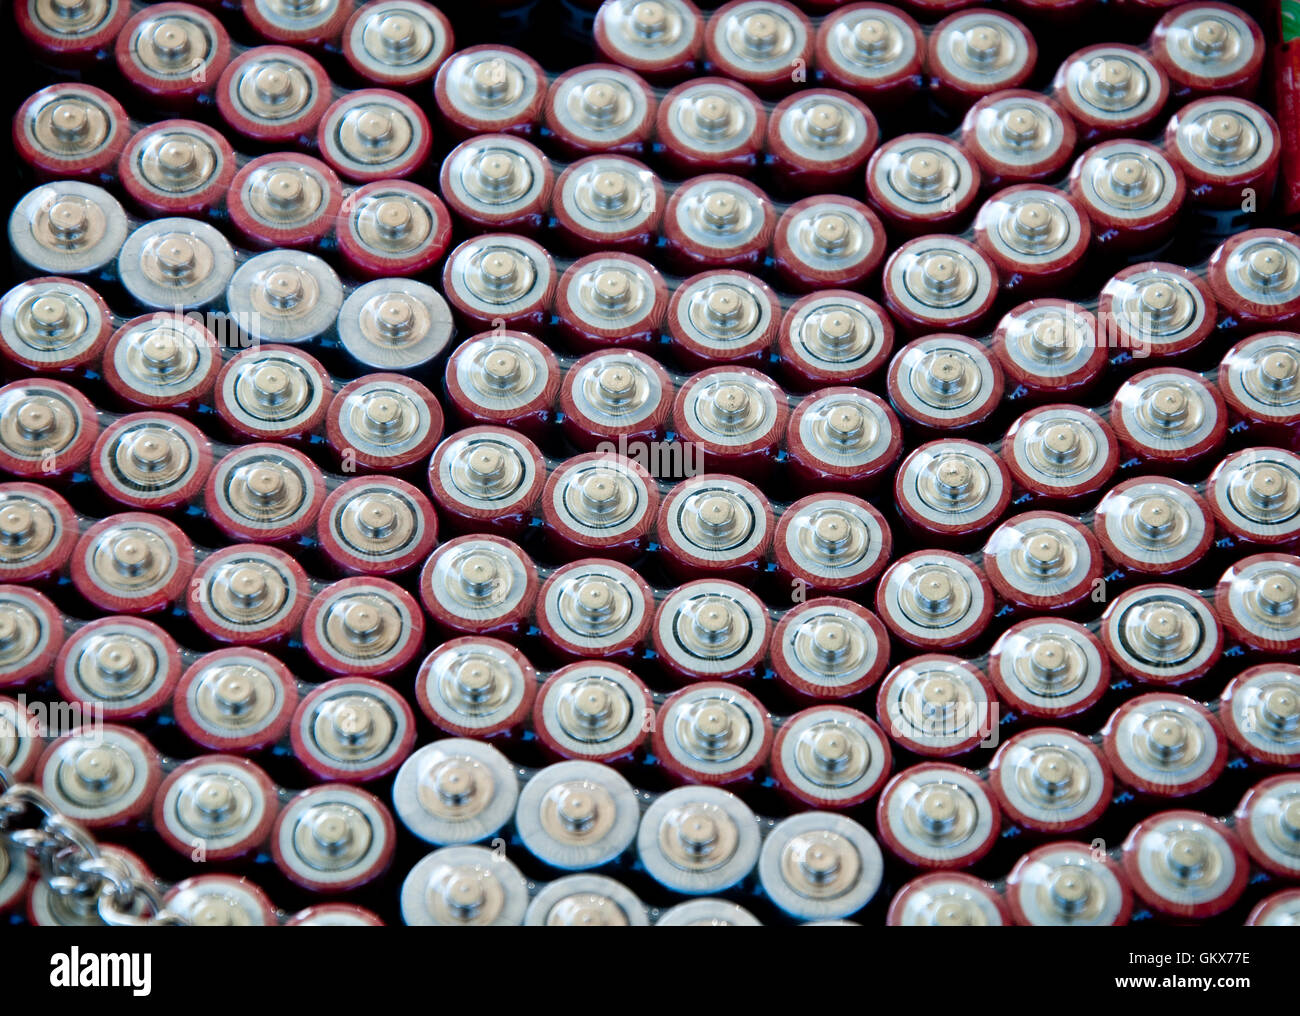 eine Reihe von Elektrobatterien Ansichten von oben Dateien Stockfoto